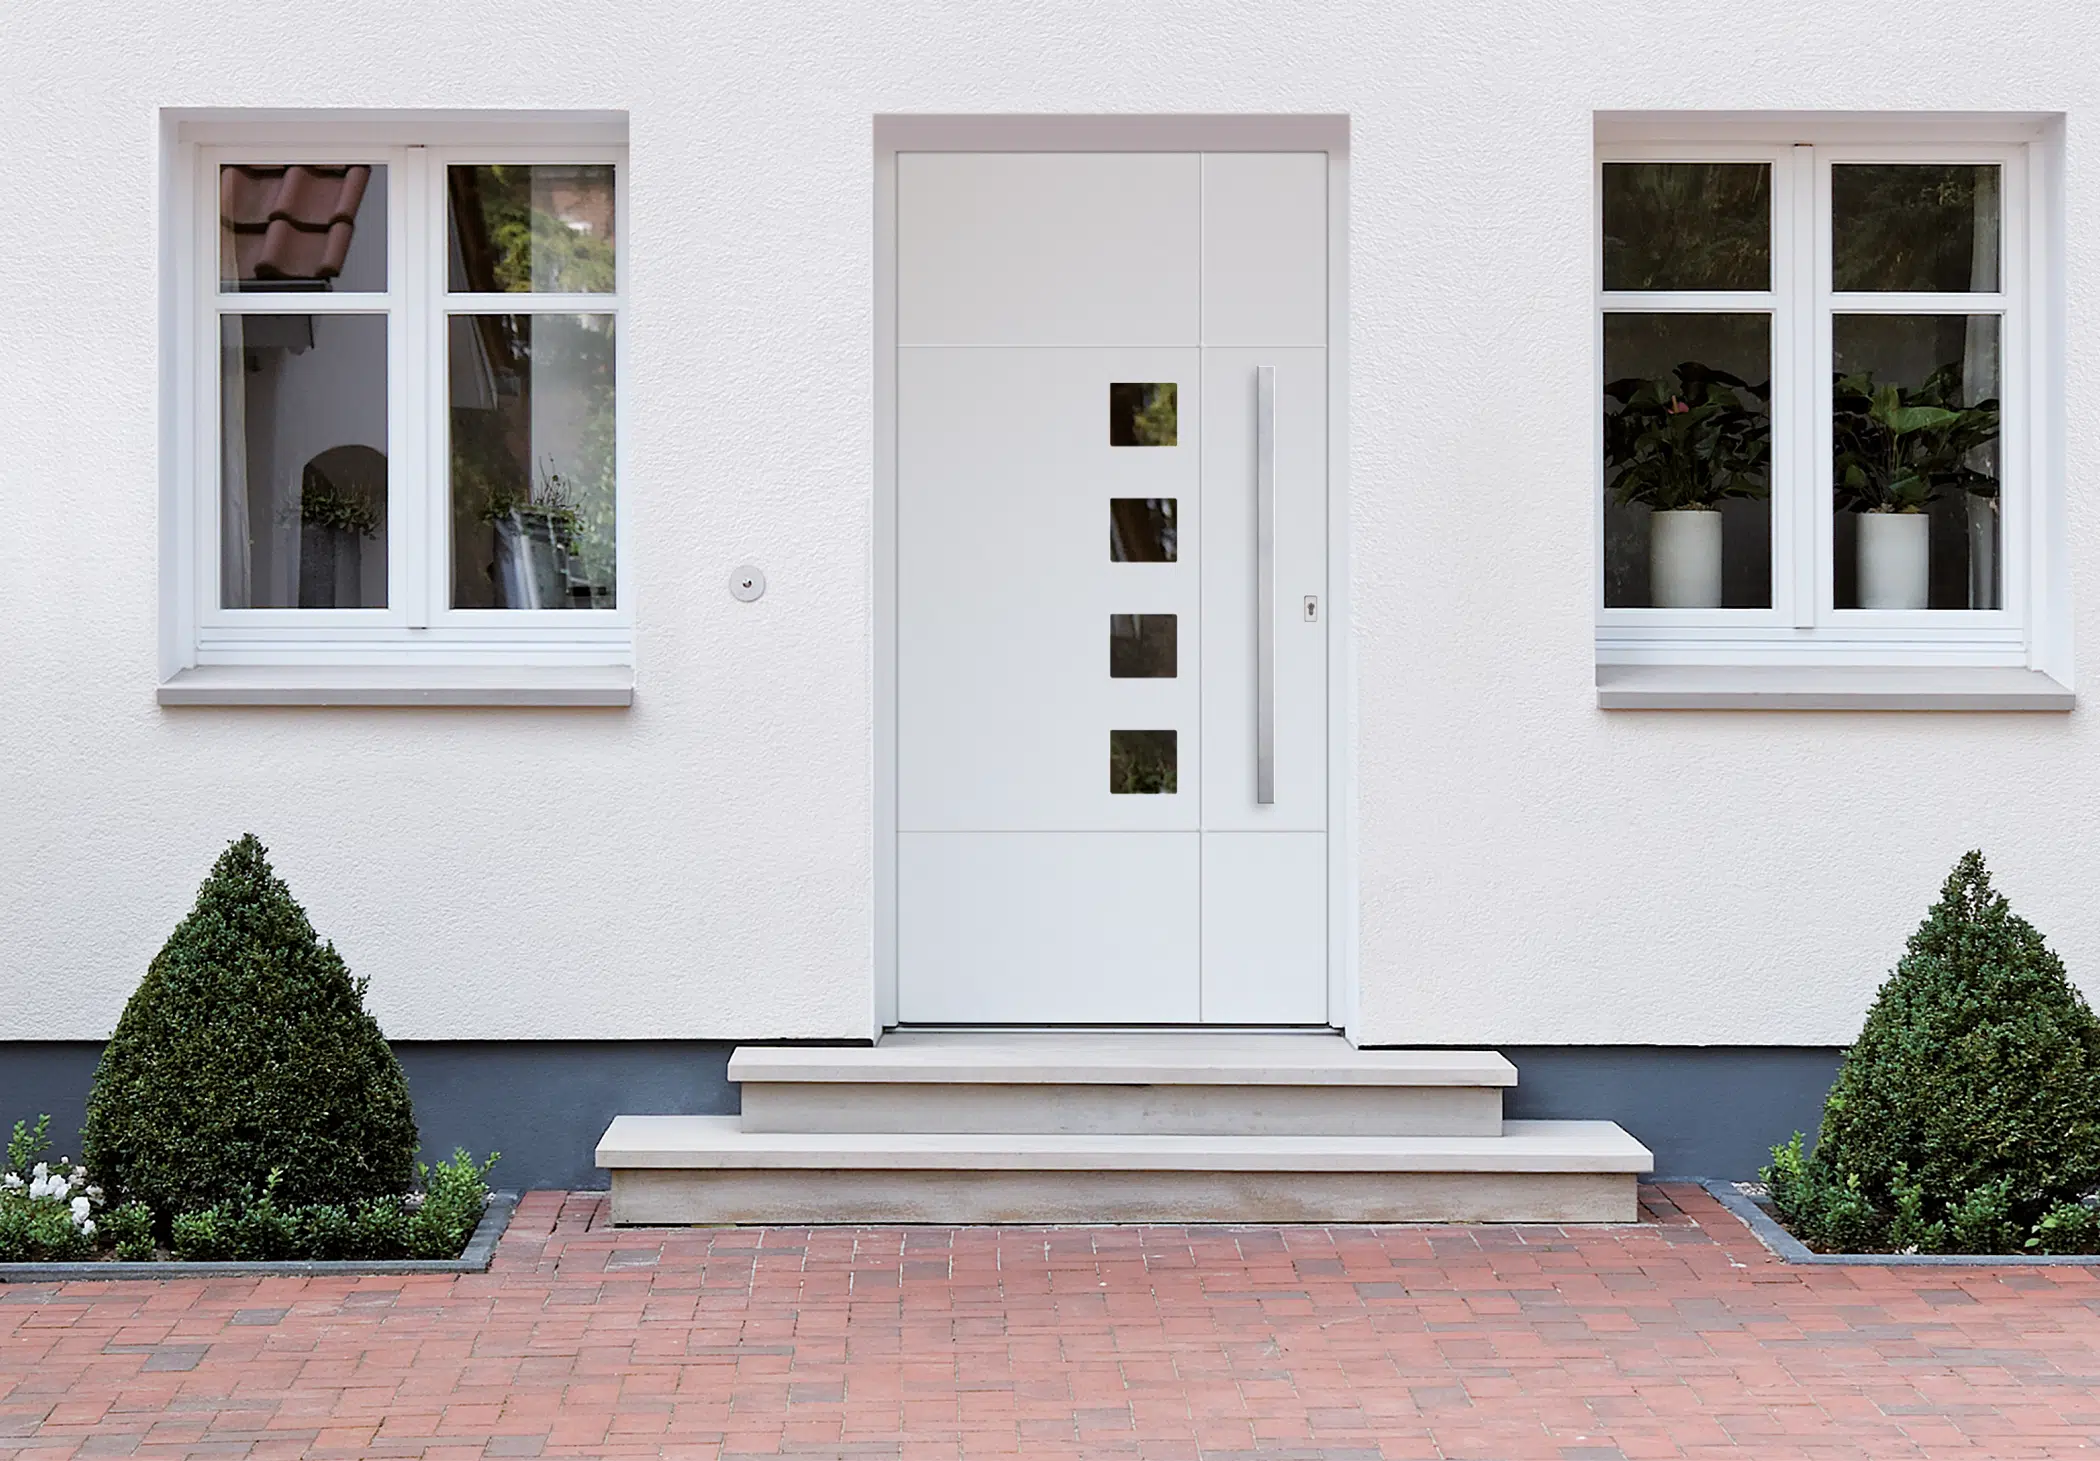 Haustür aus Aluminium nach Maß gefertigt - Projekt in Oberösterreich